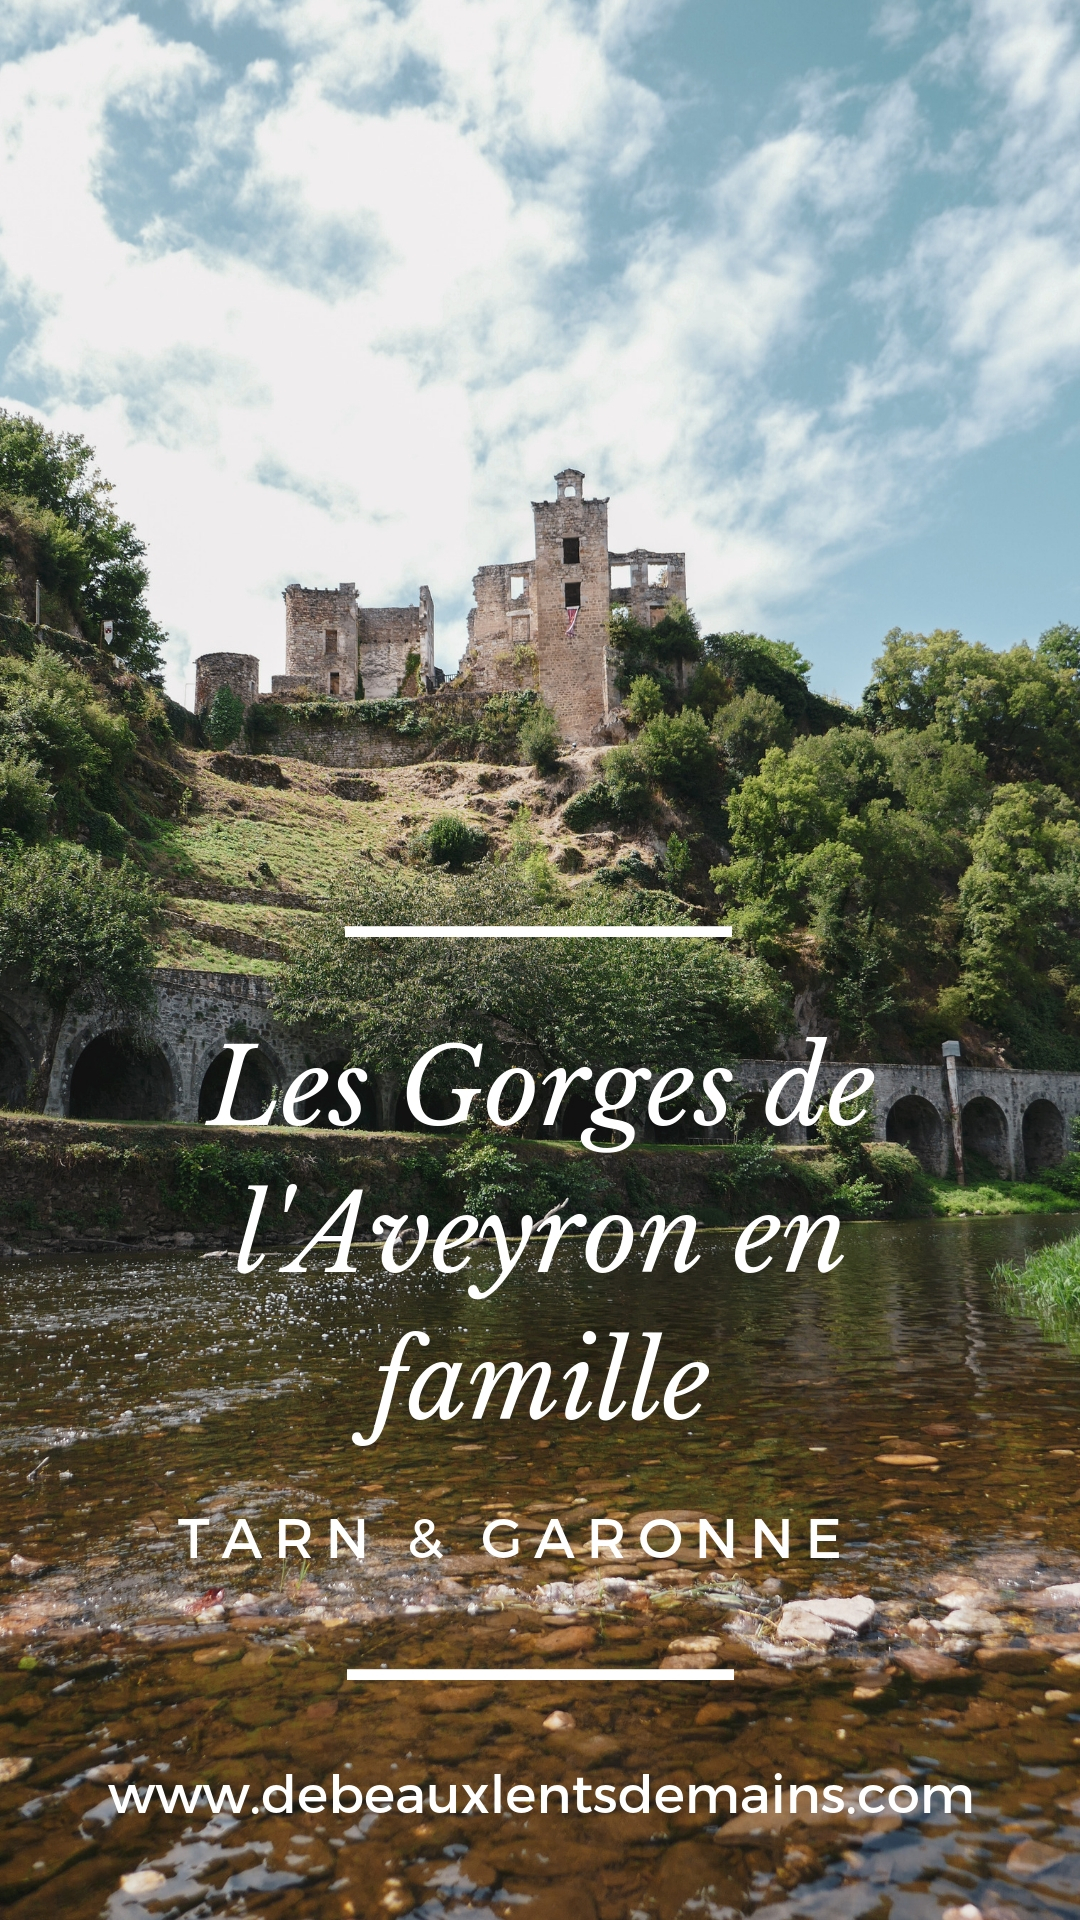 Les Gorges de l'Aveyron en famille #tarn et Garonne